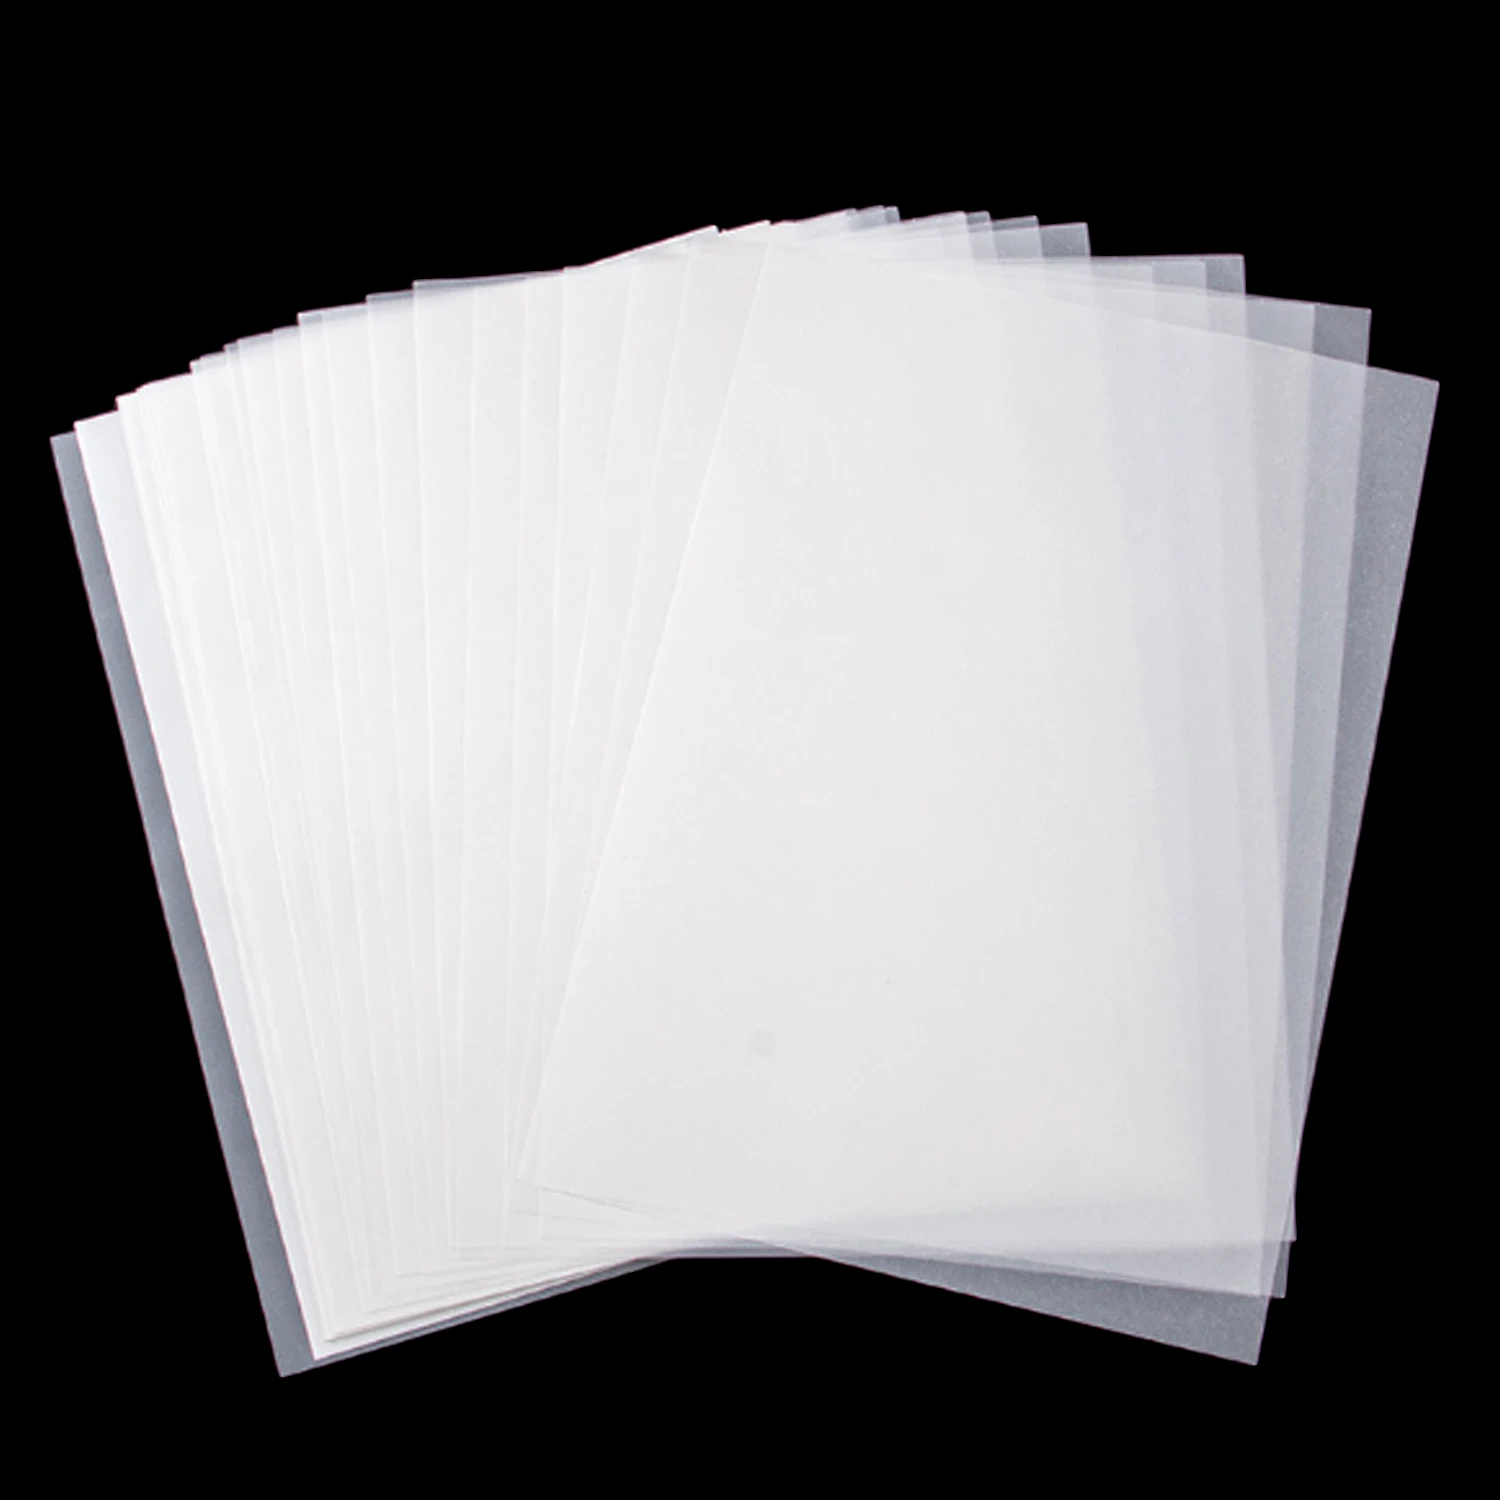 50 листов формата А4, полупрозрачная нарисованная калька для манги, художественного архитектурного дизайна, графического технического рисунка